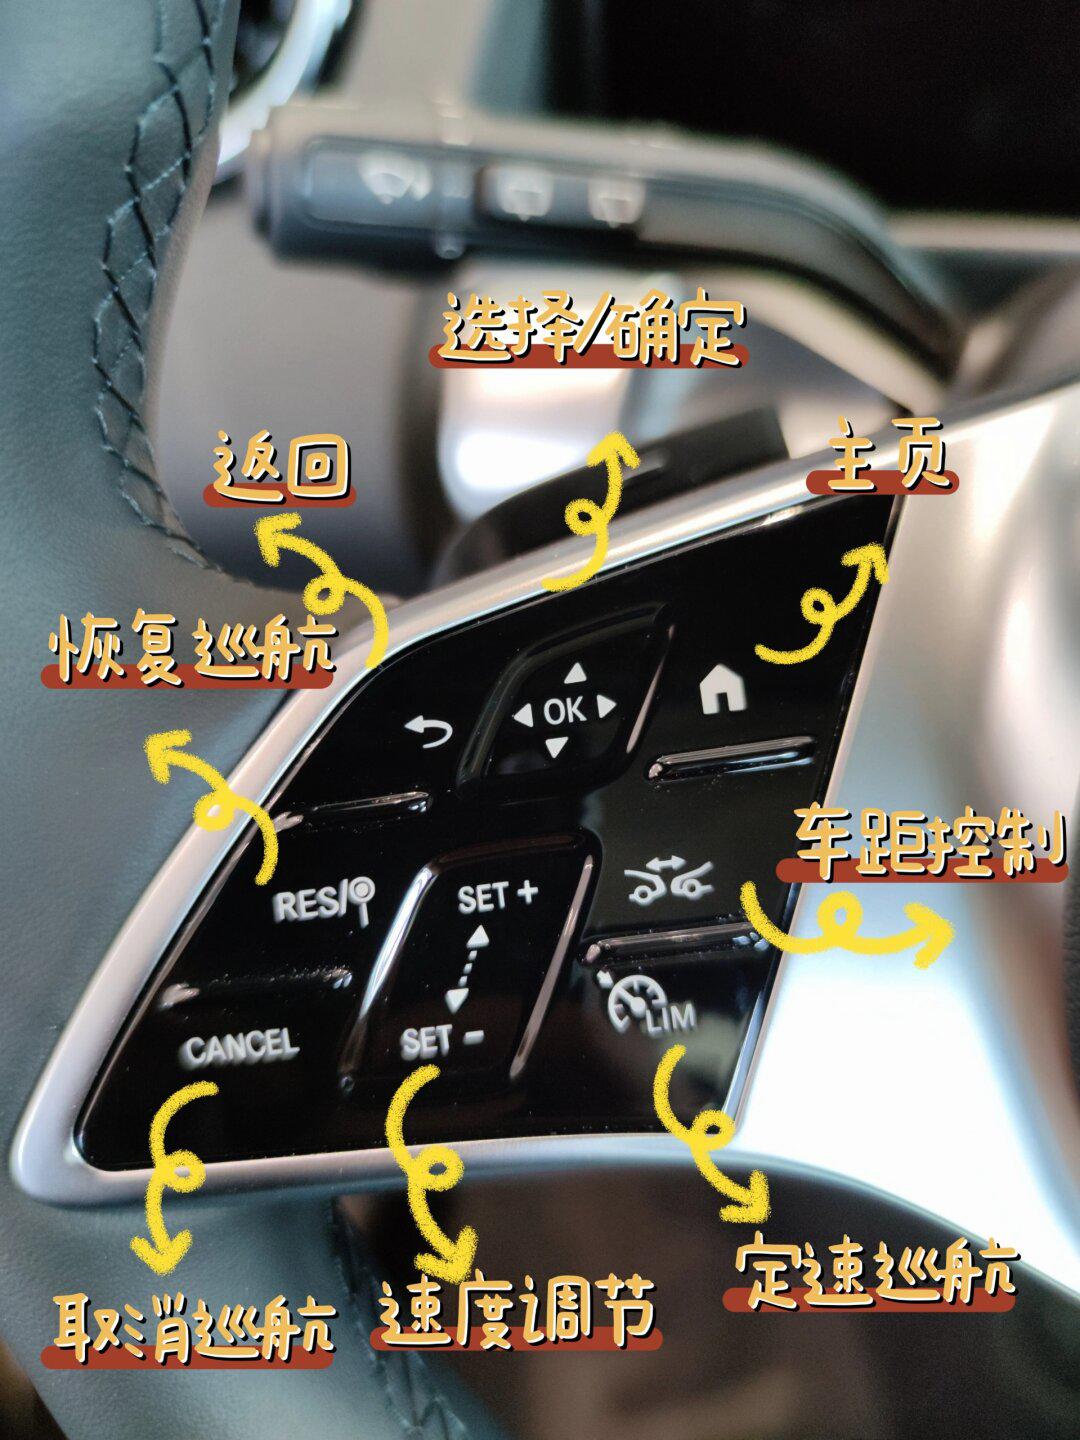 车上标志图解按键图片